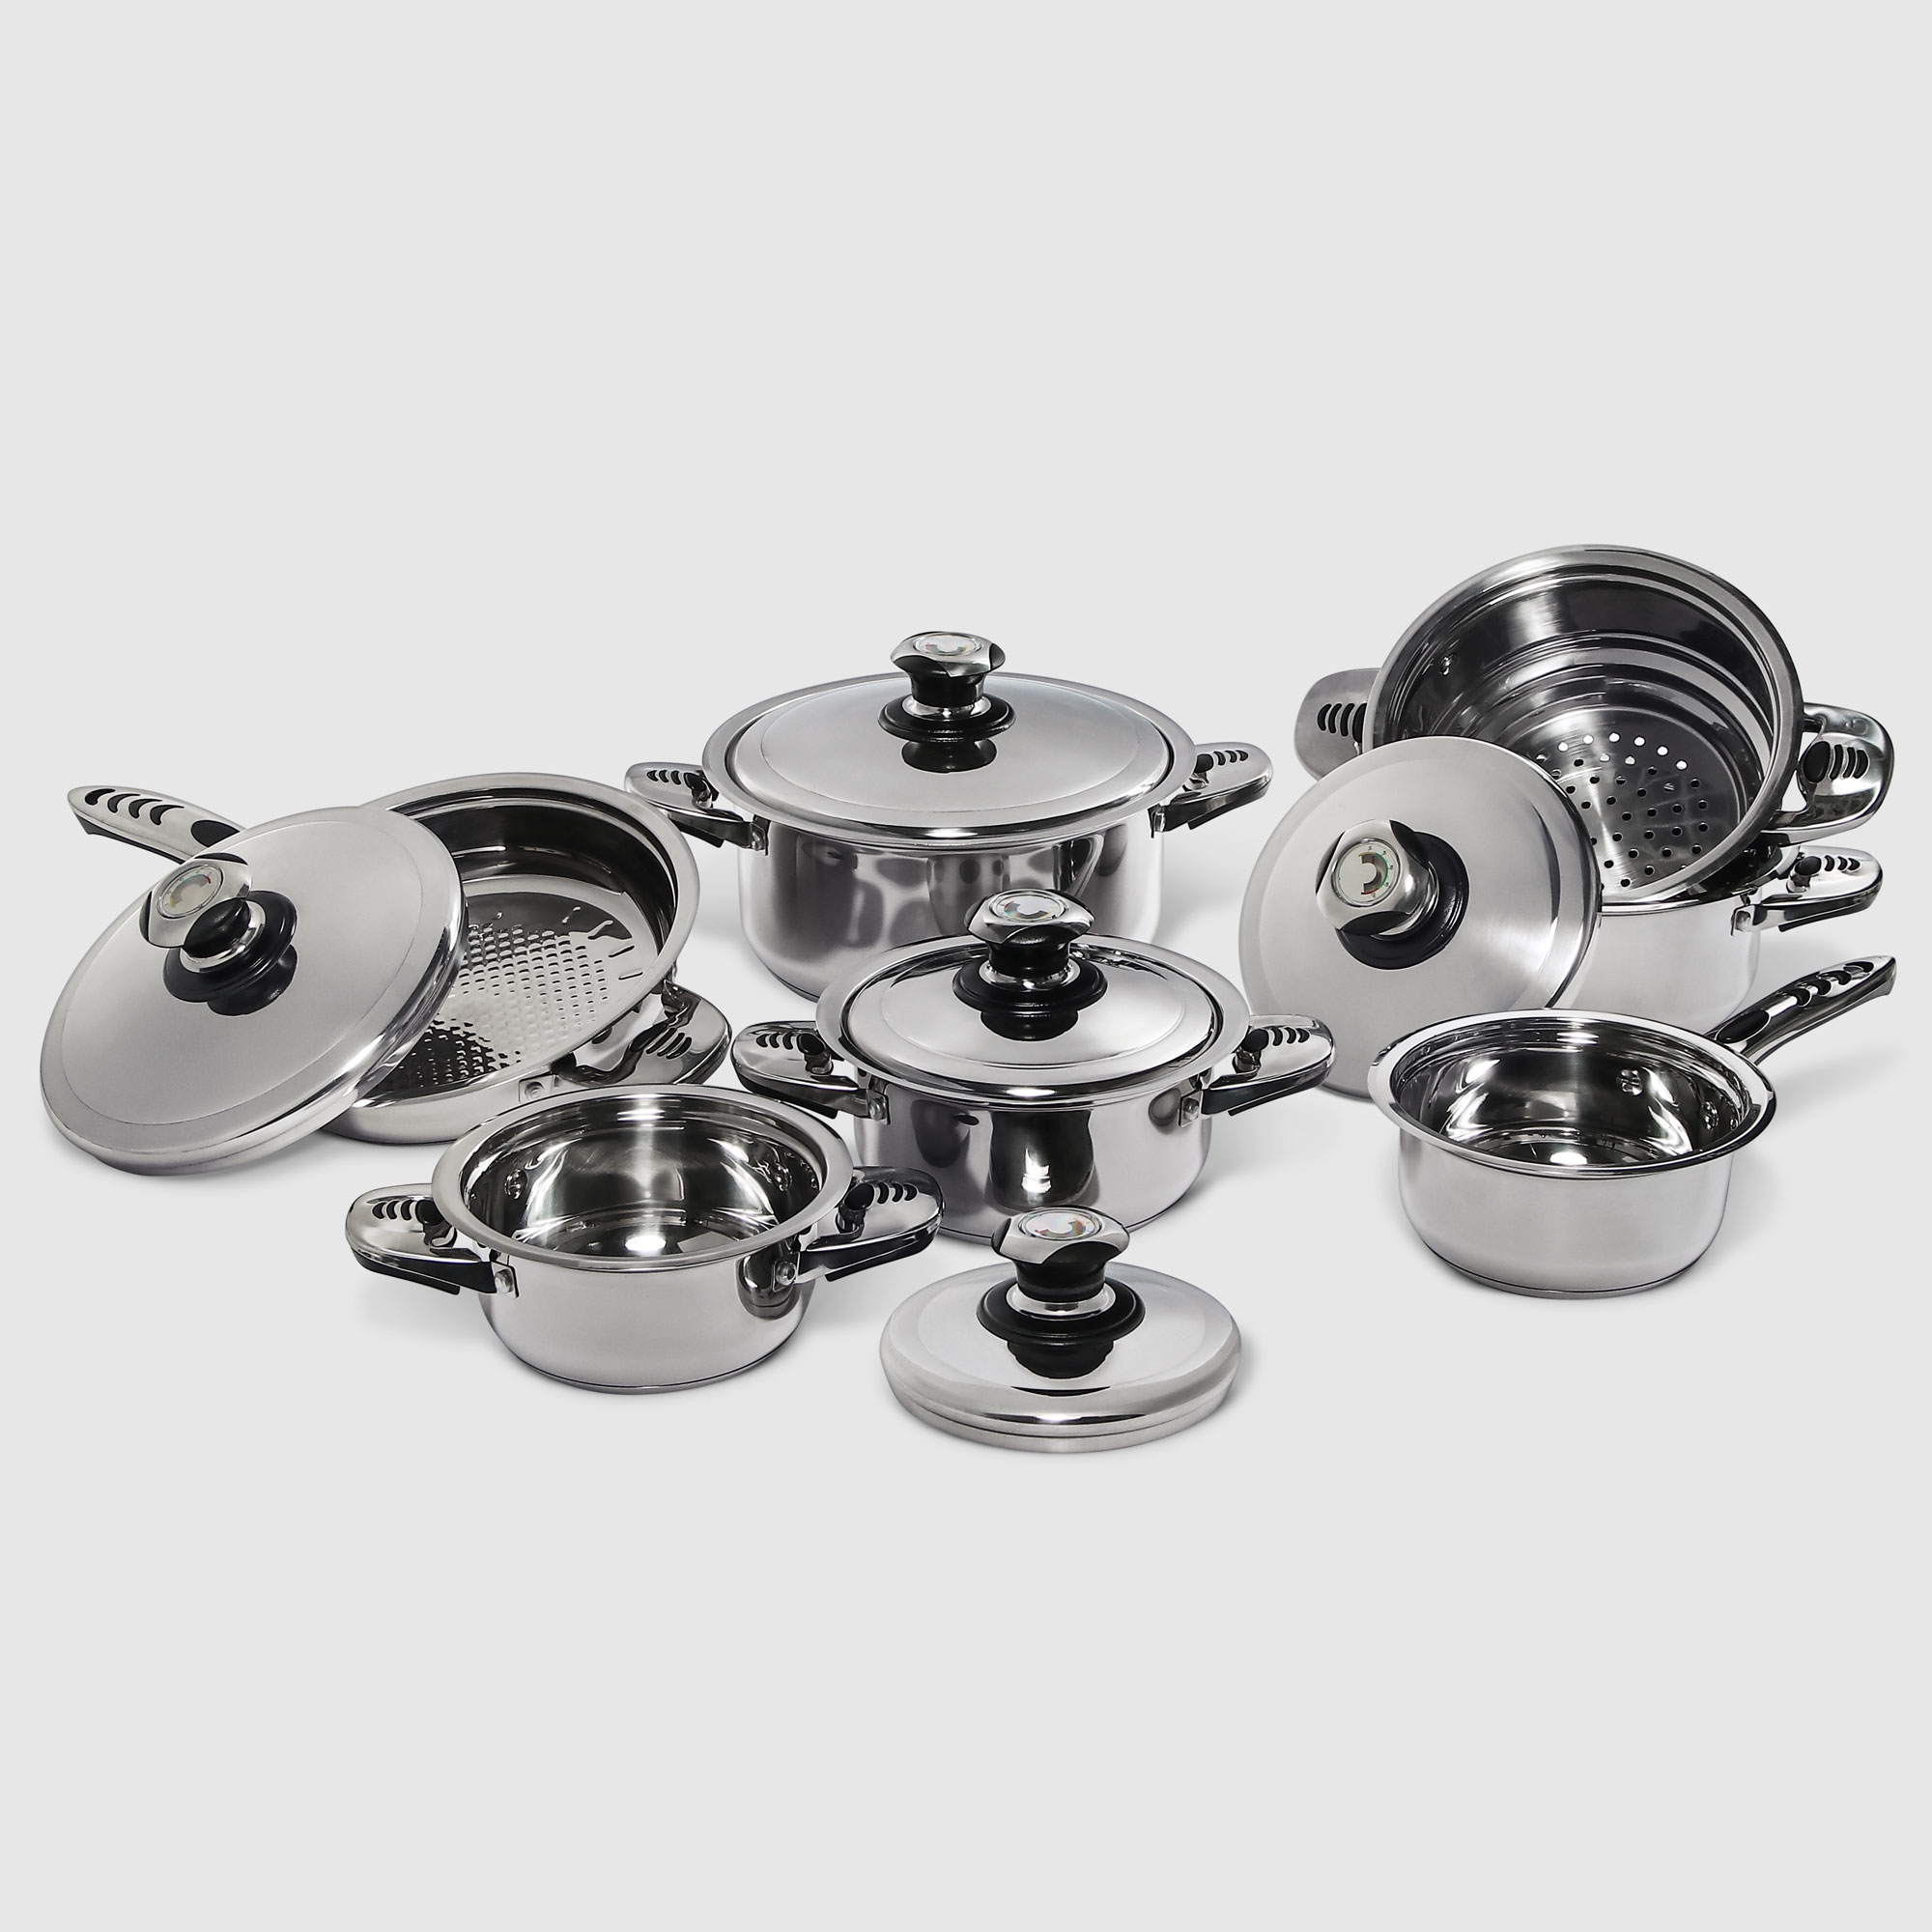 Набор посуды Vantage 12 предметов (E11202) набор кухонных гаджетов vantage 16 предметов